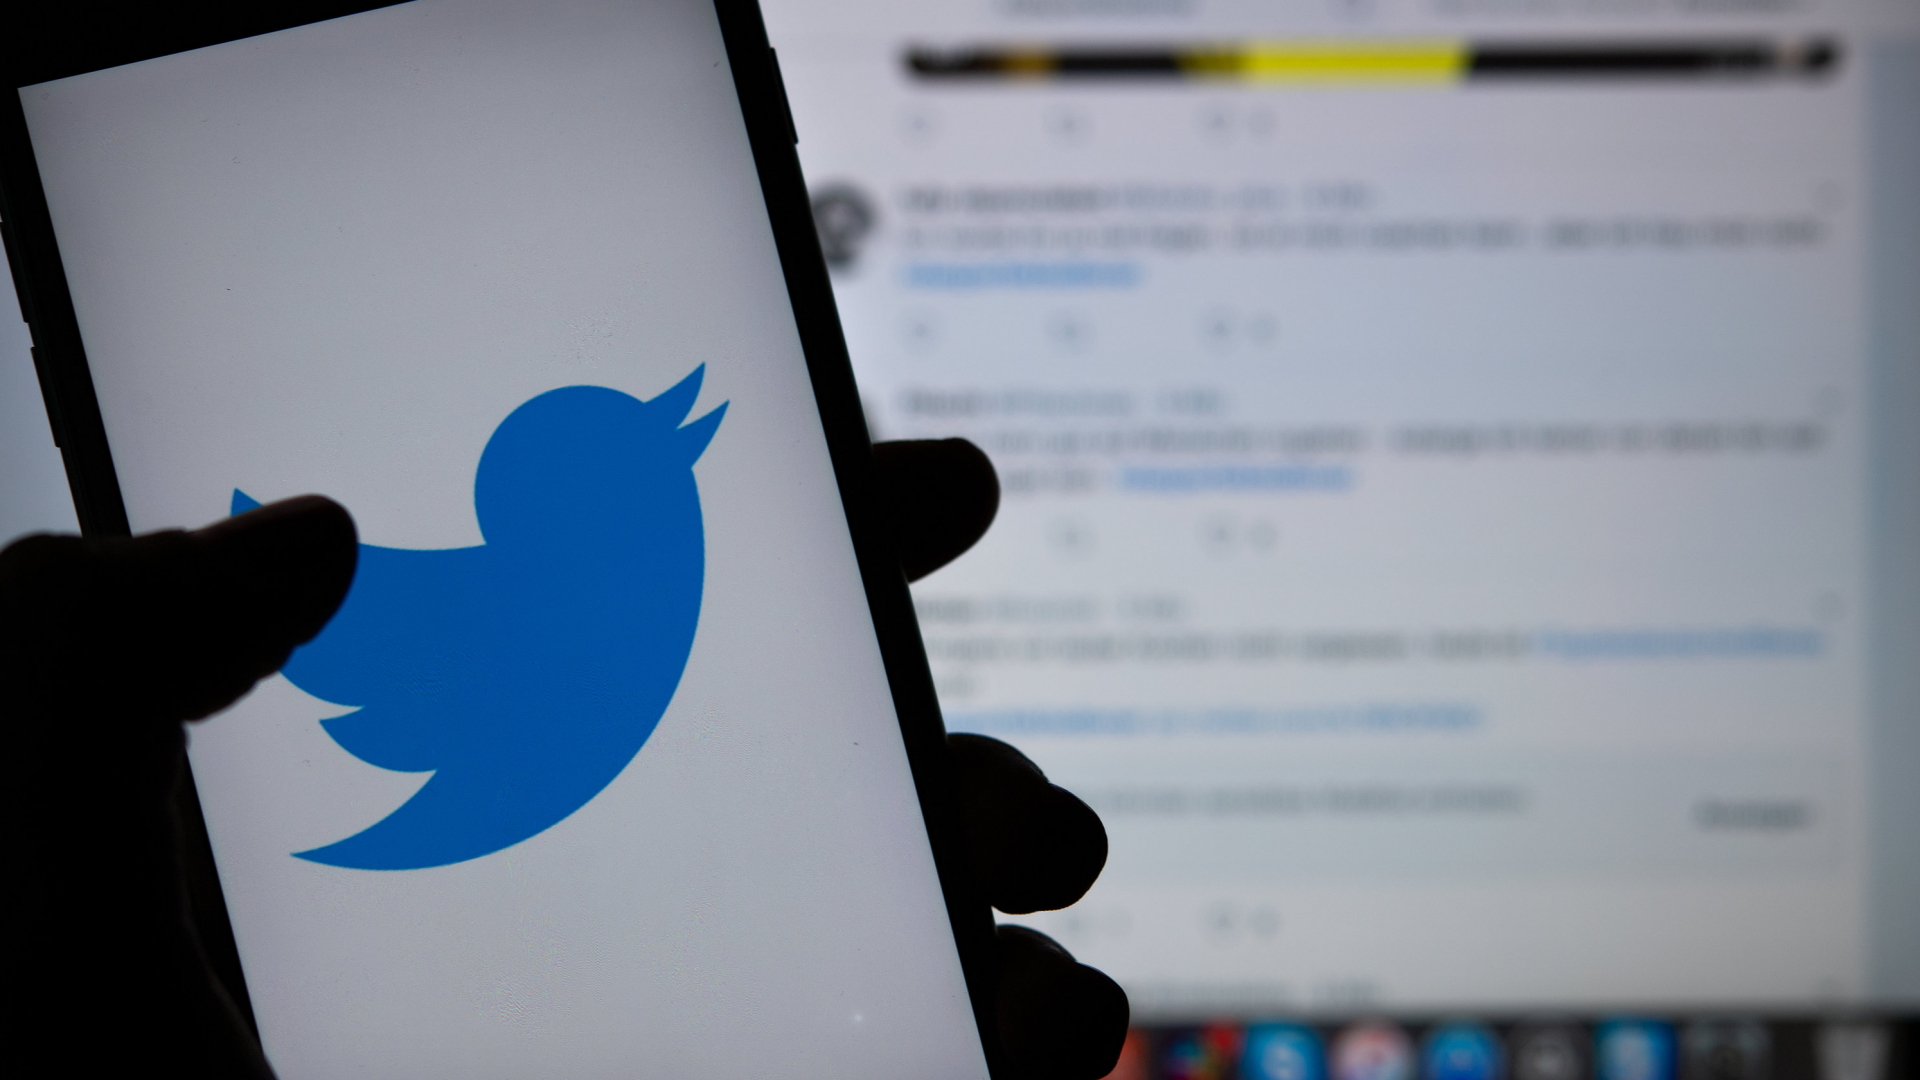 Das Logo des sozialen Mediums Twitter ist auf dem Display eines Smartphones zu sehen.